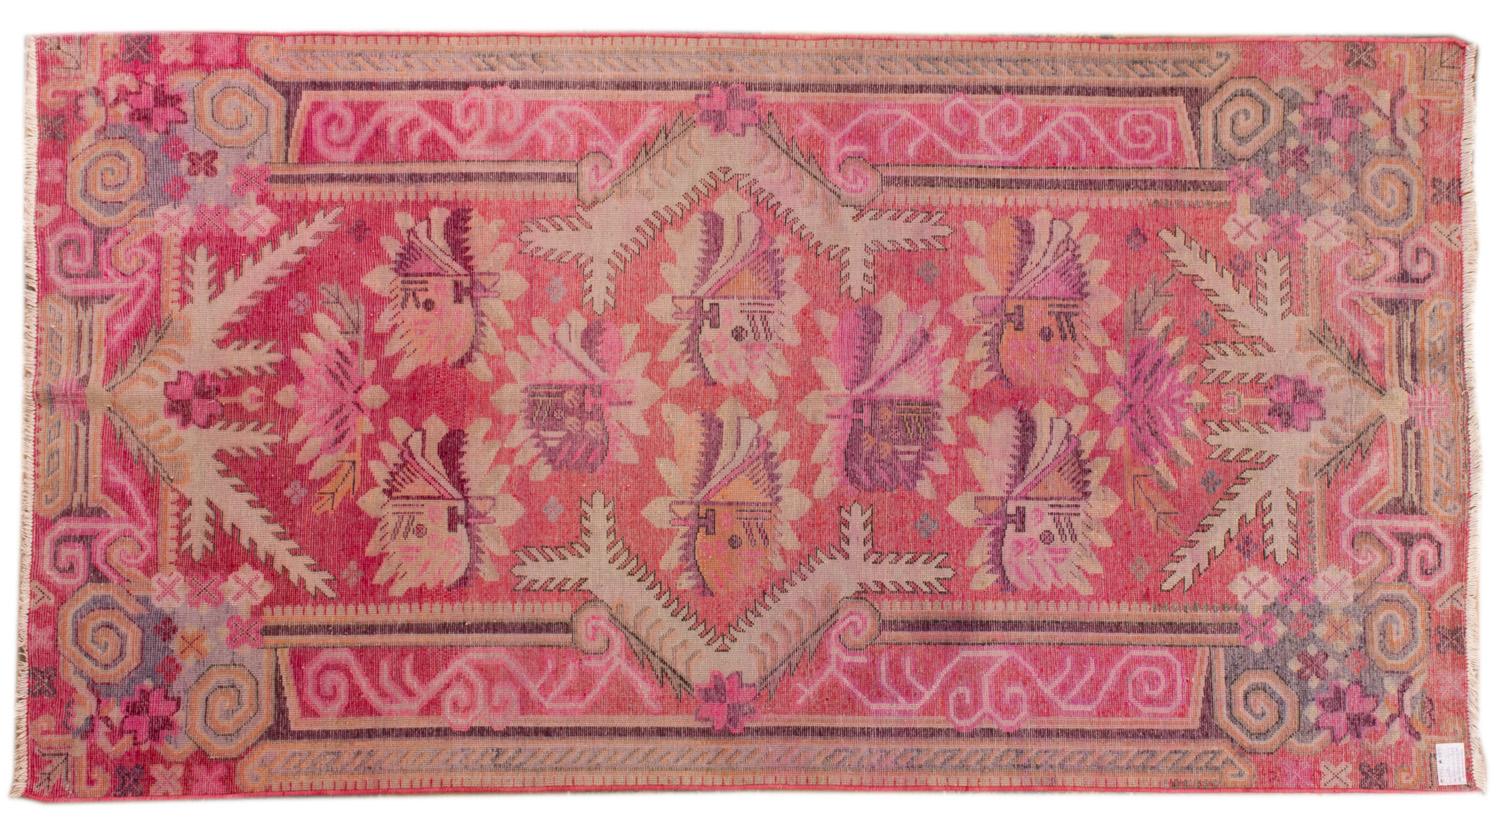 Heiteres Rosa für diesen alten Samarkand-Teppich, wie ein blühender Garten, weich und angenehm zu berühren - Samarkand: die berühmte Stadt 